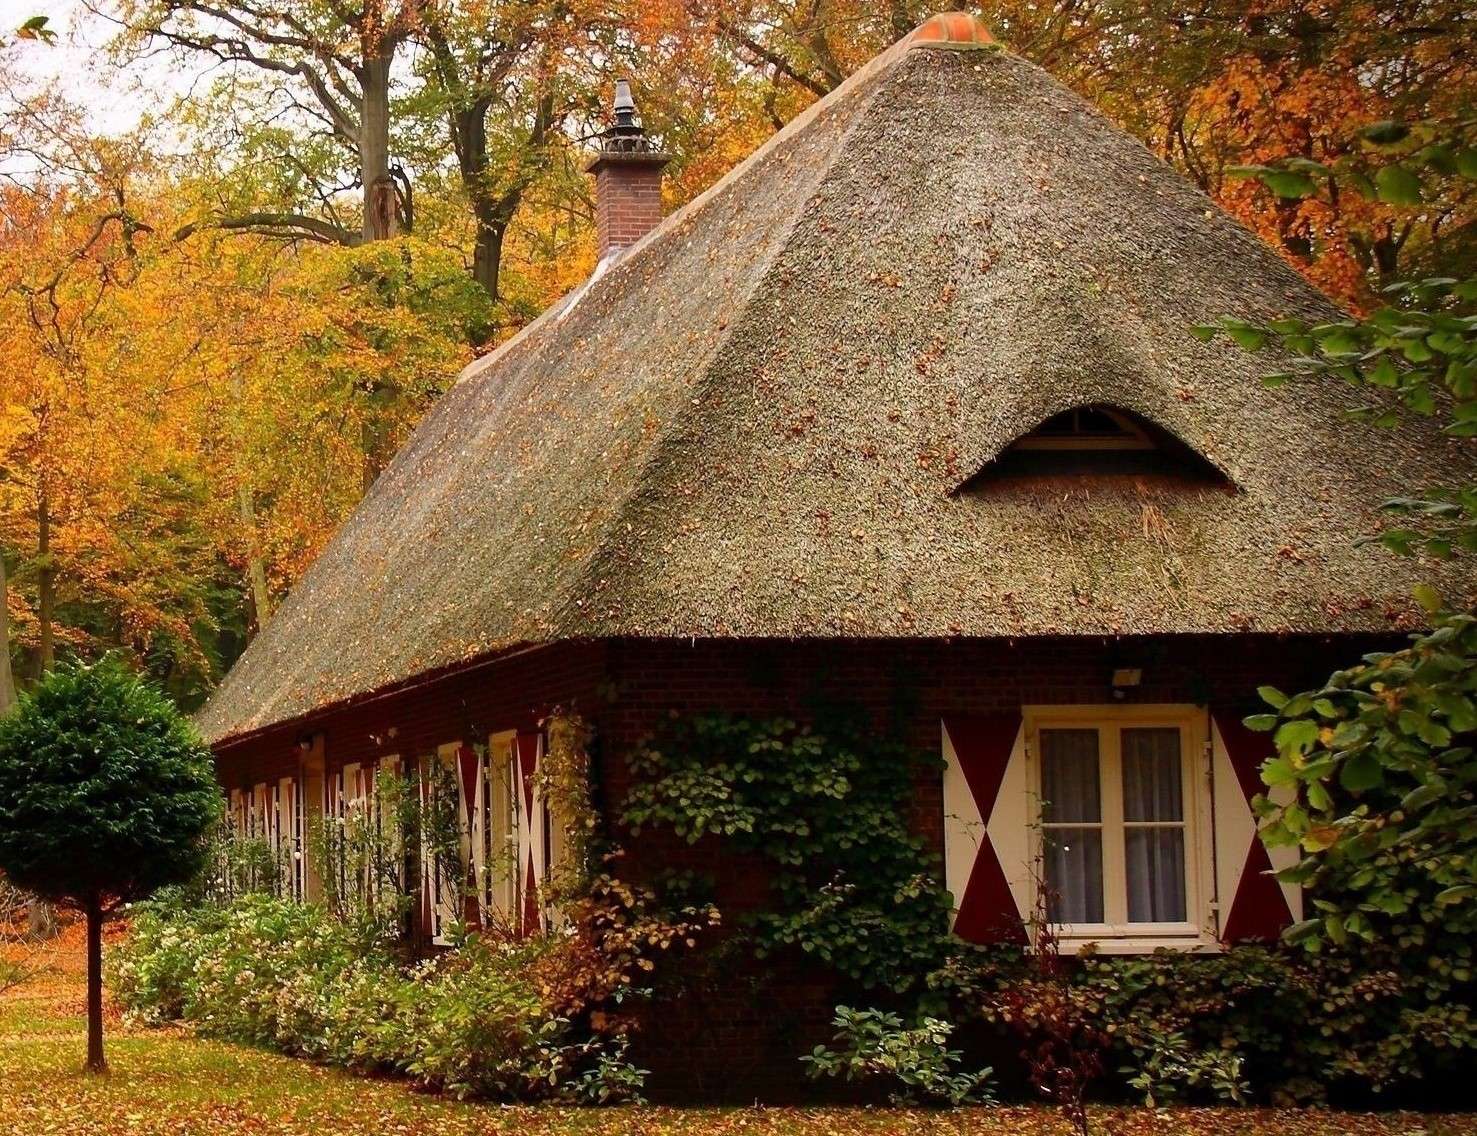 Huis met een rieten dak online puzzel